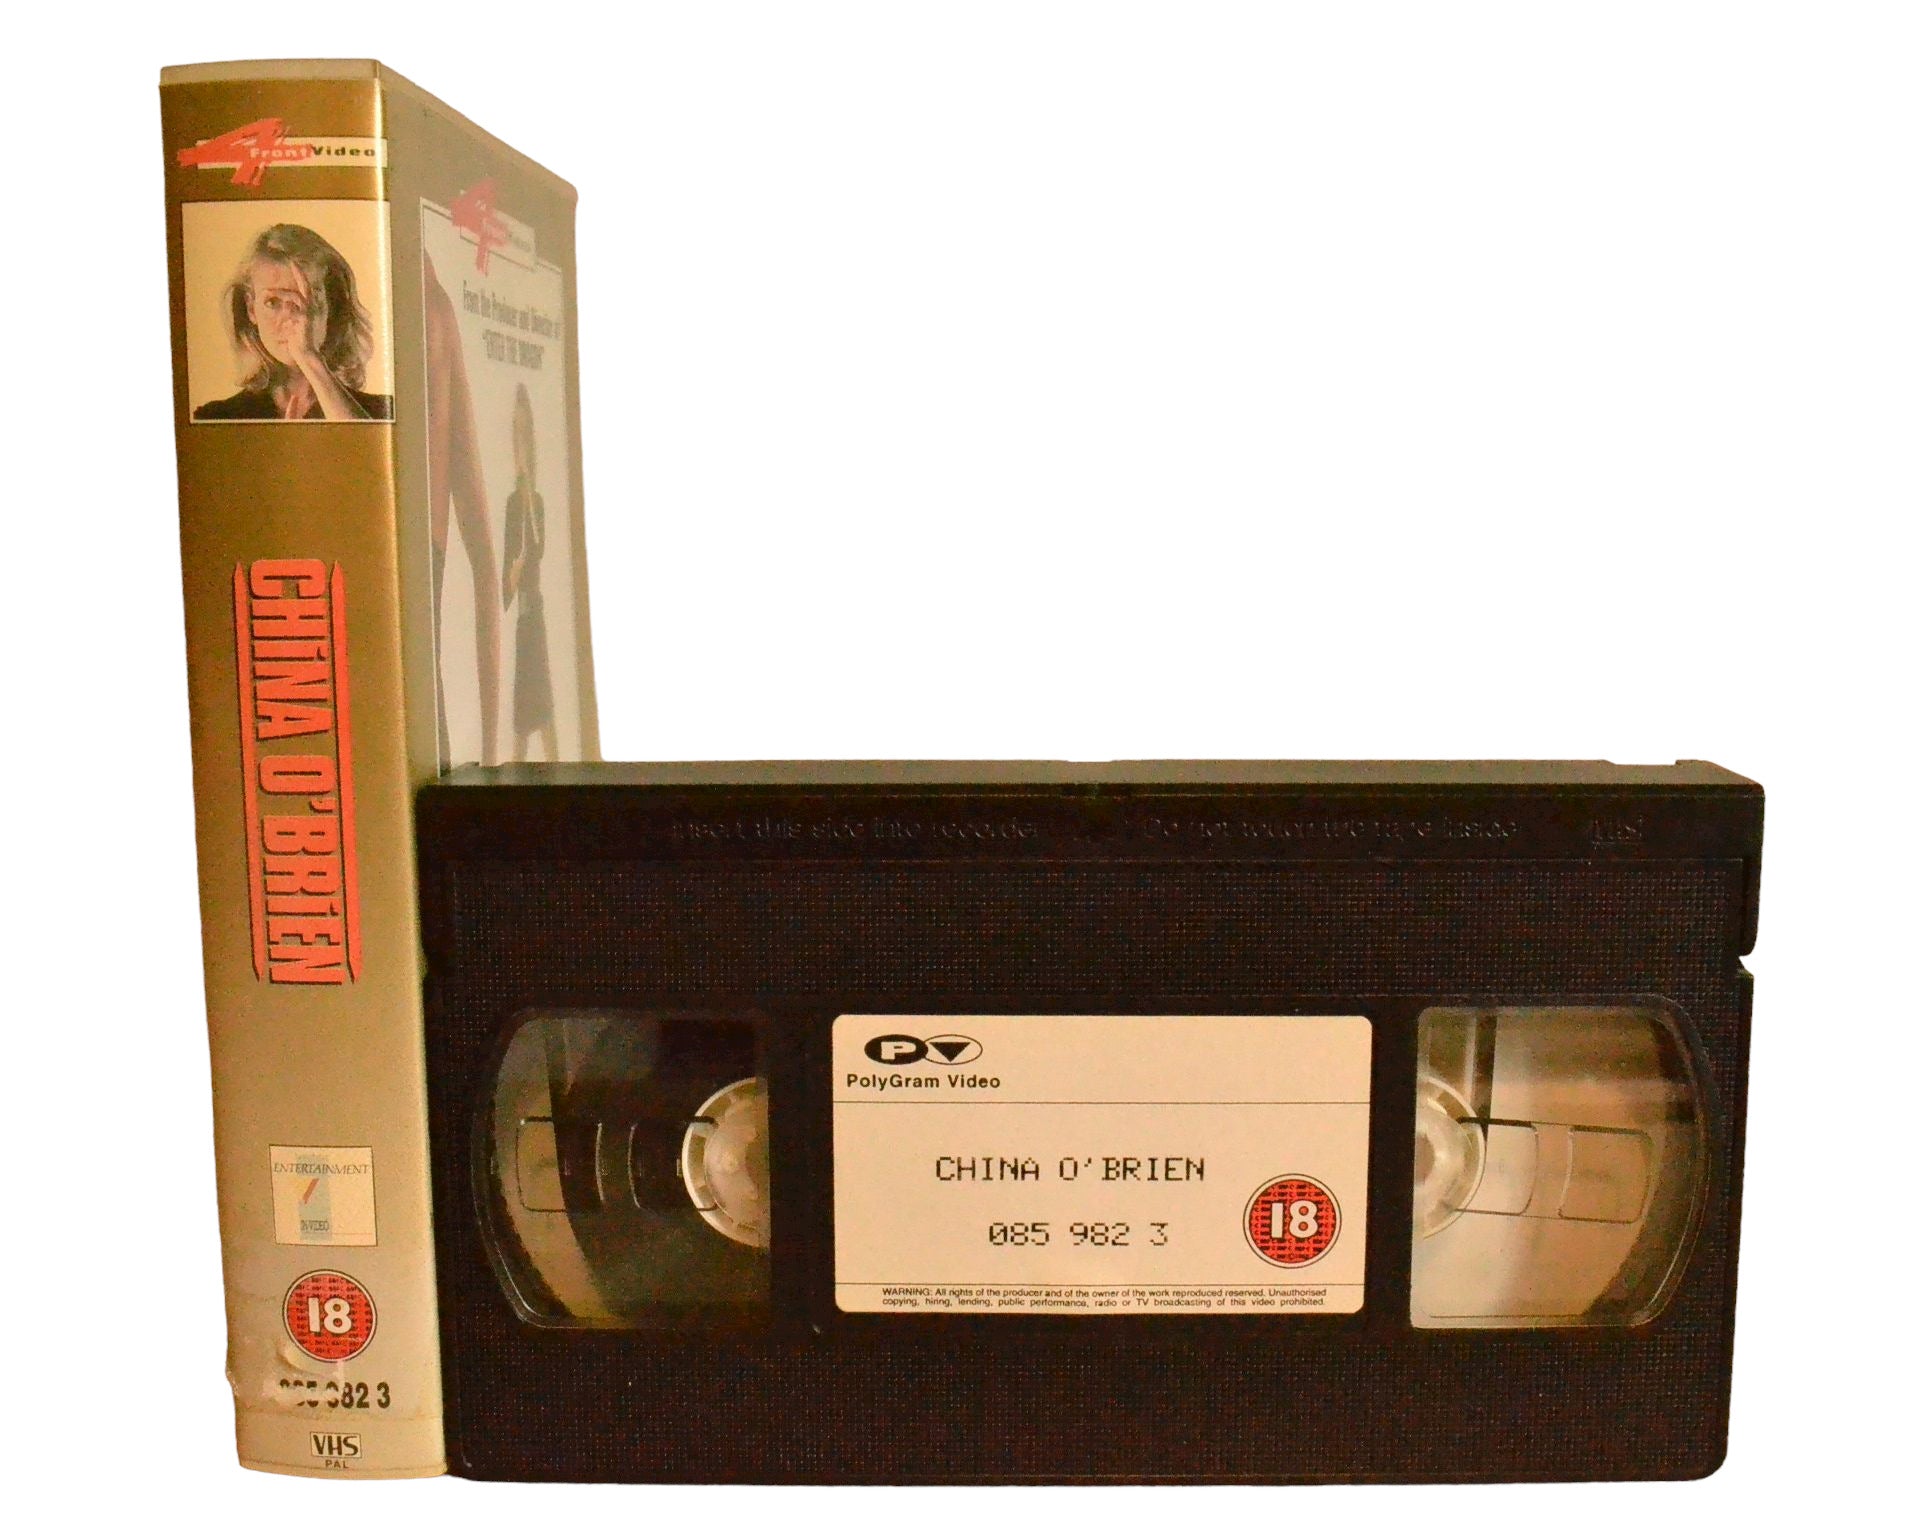 China O'Brien - Cynthia Rothrock - polyGram Video - Action - Pal - VHS-